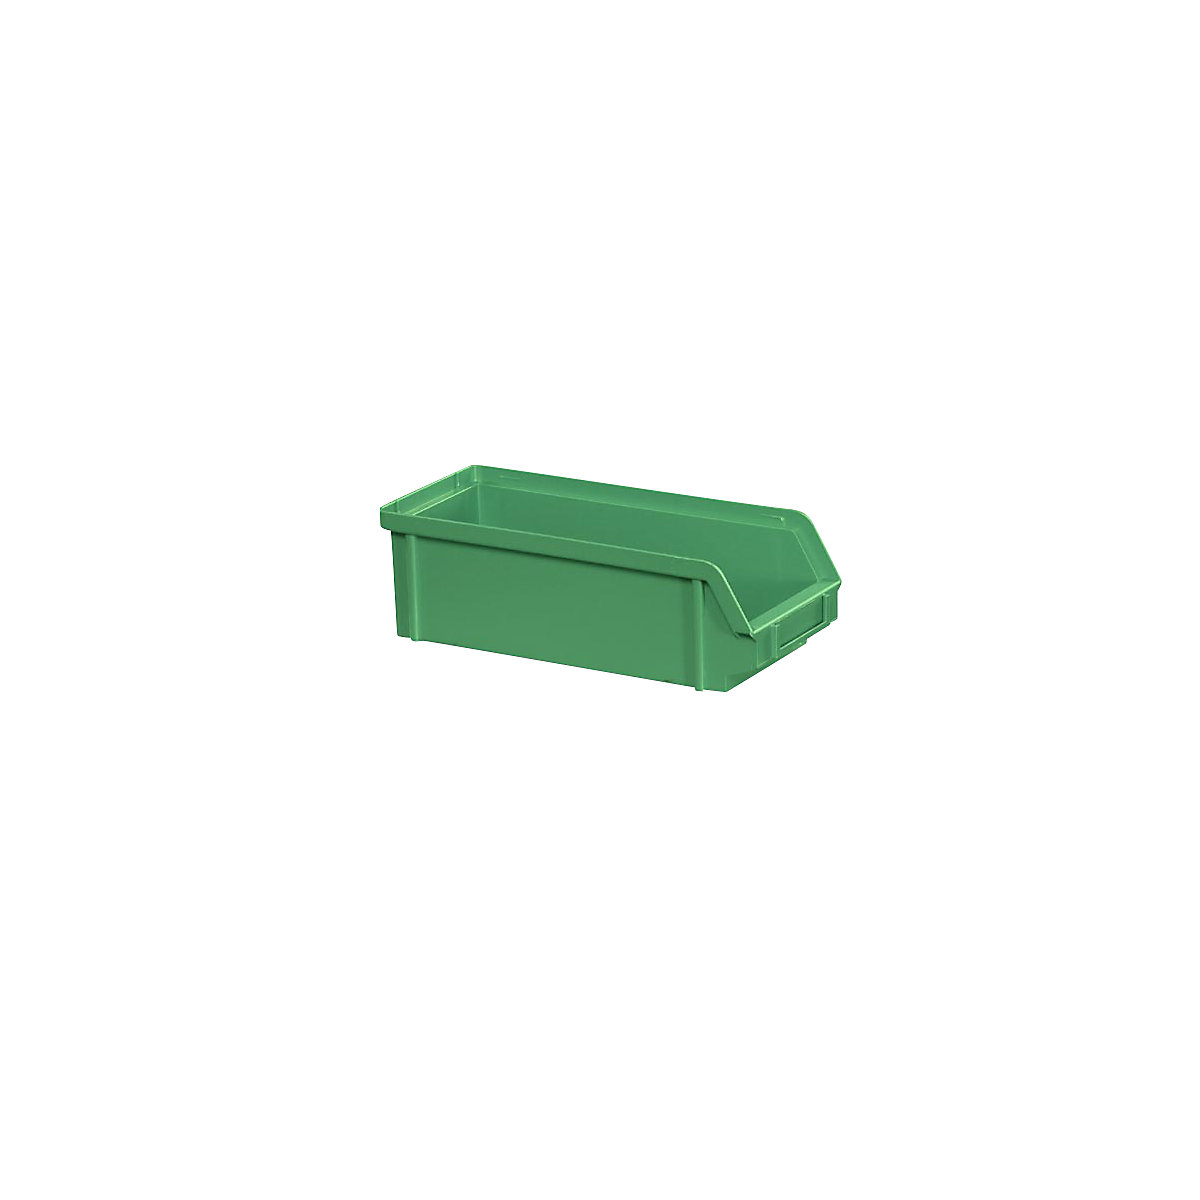 Sichtlagerkasten aus Polystyrol, Länge 230 mm, BxH 102 x 75 mm, VE 24 Stk, grün-13